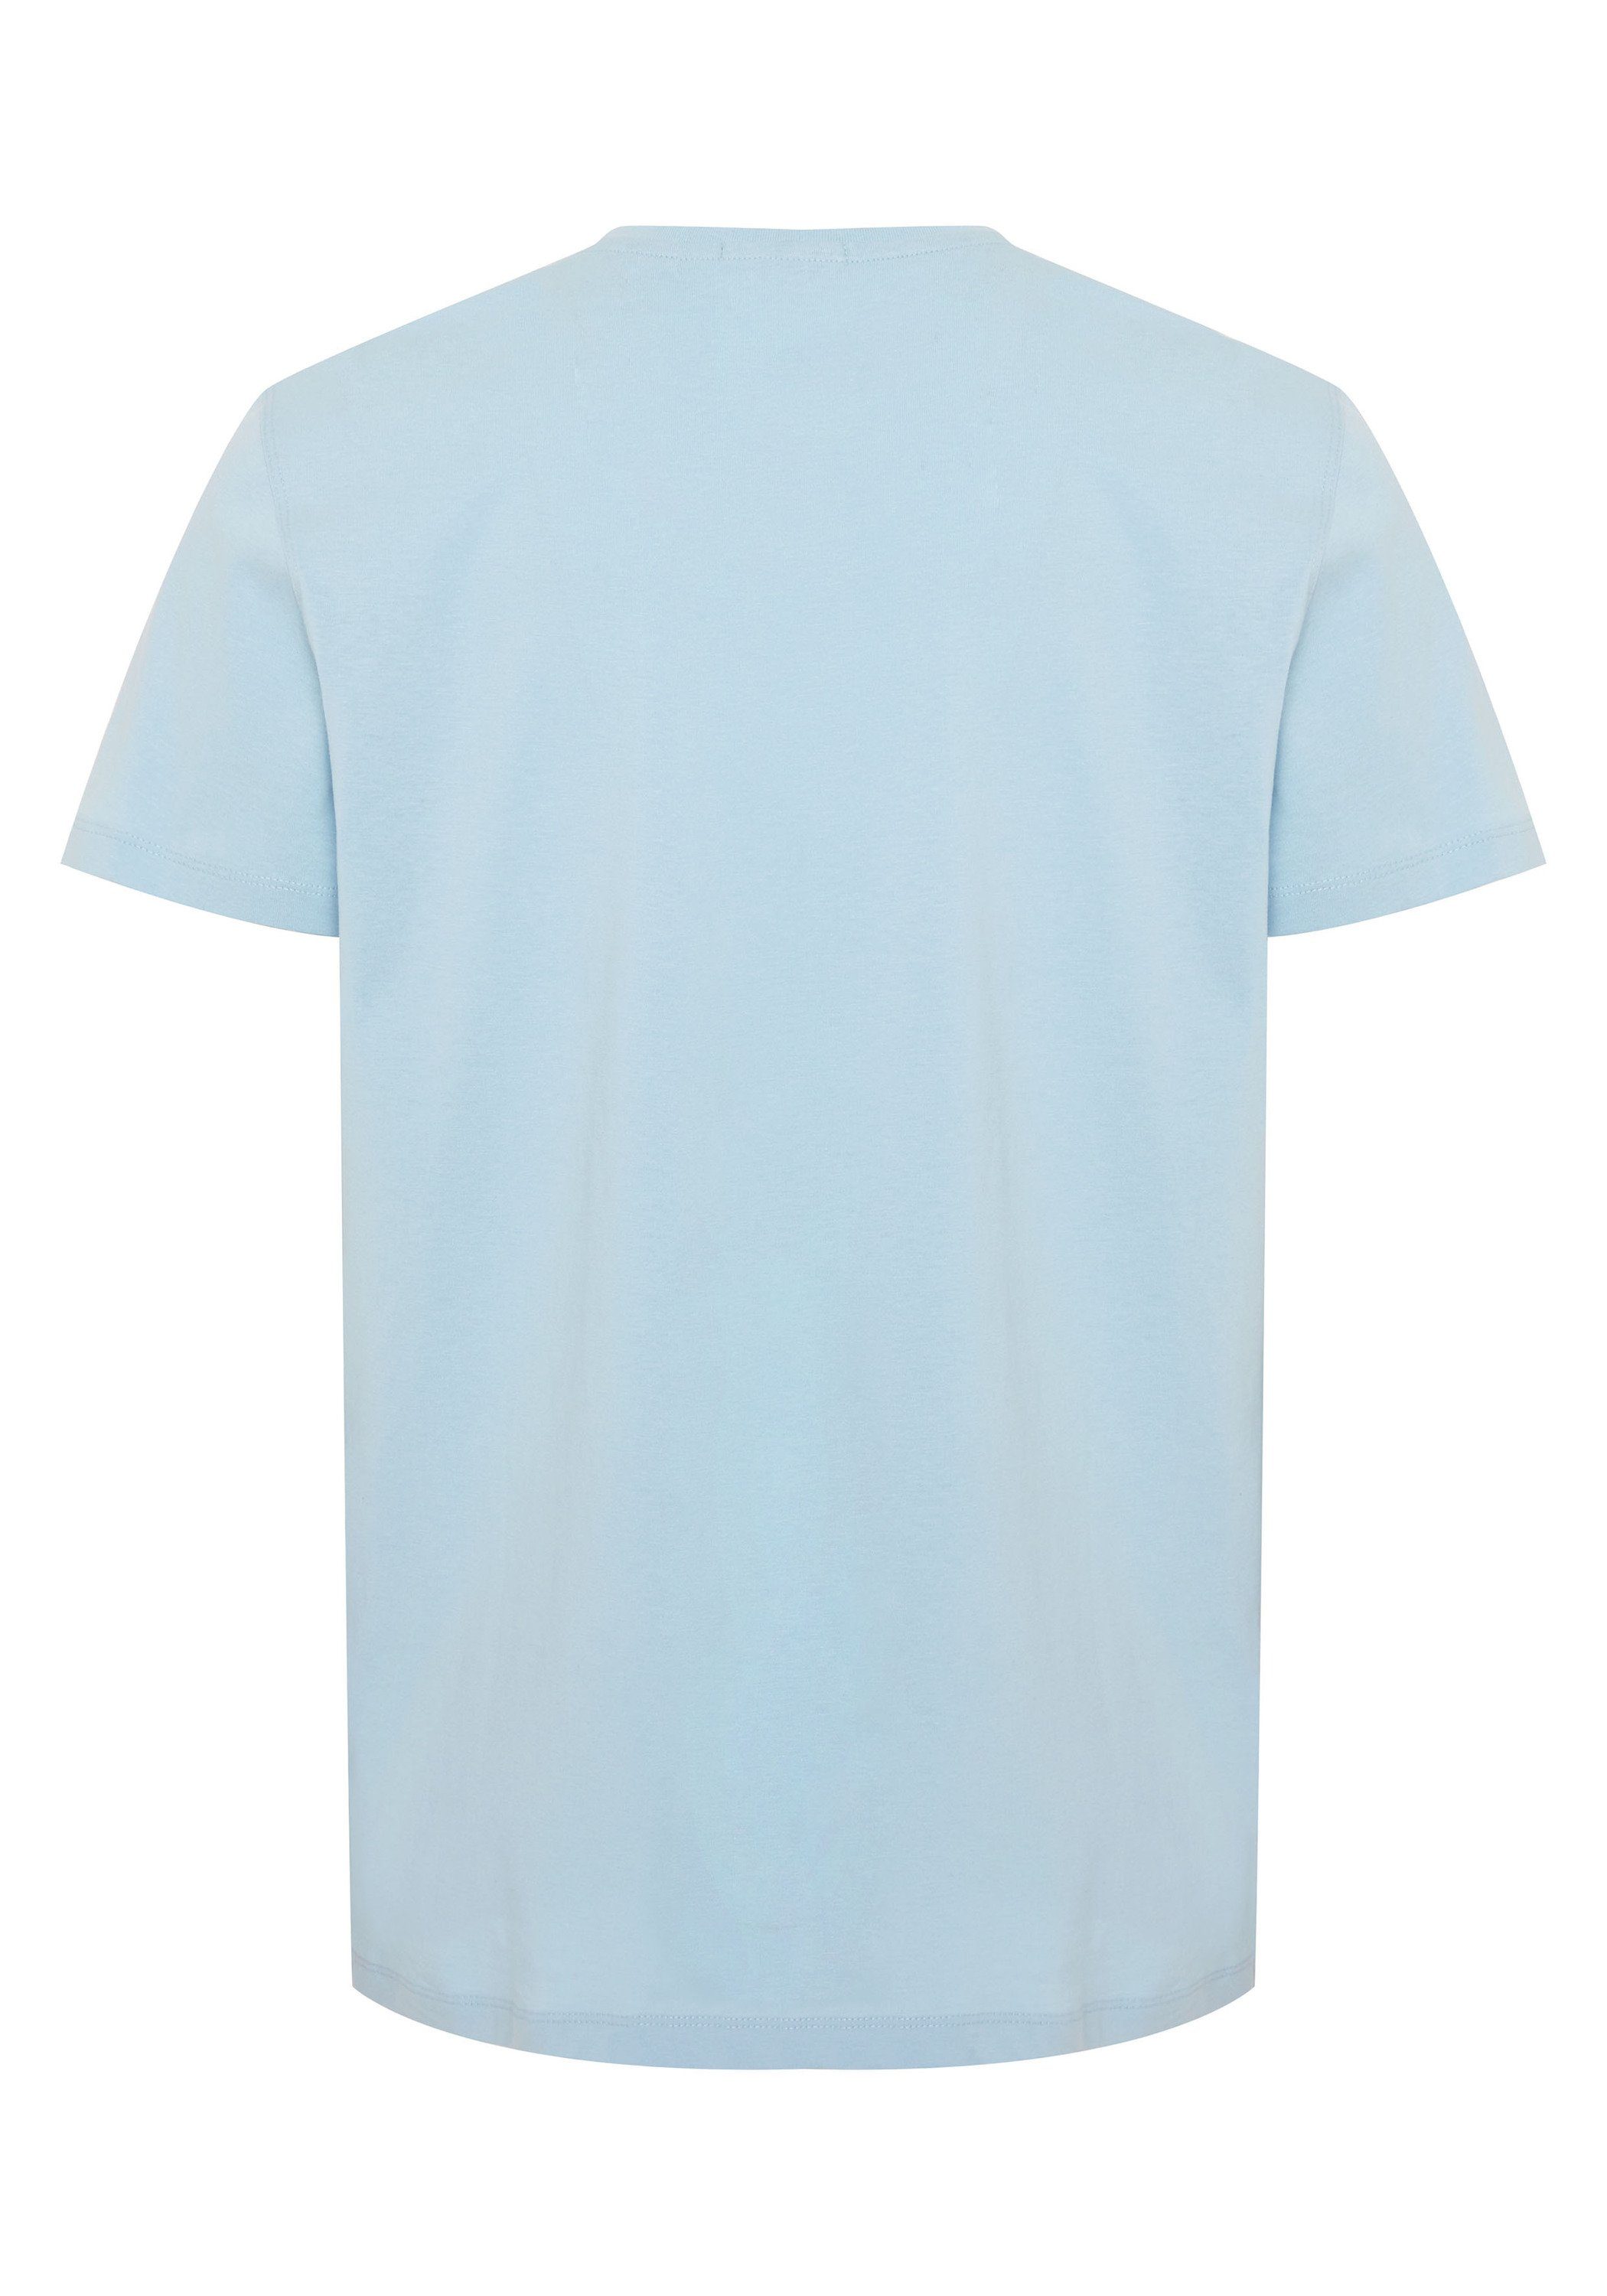 T-Shirt Blue Print-Shirt Art-Frontprint 1 Sky mit Chiemsee